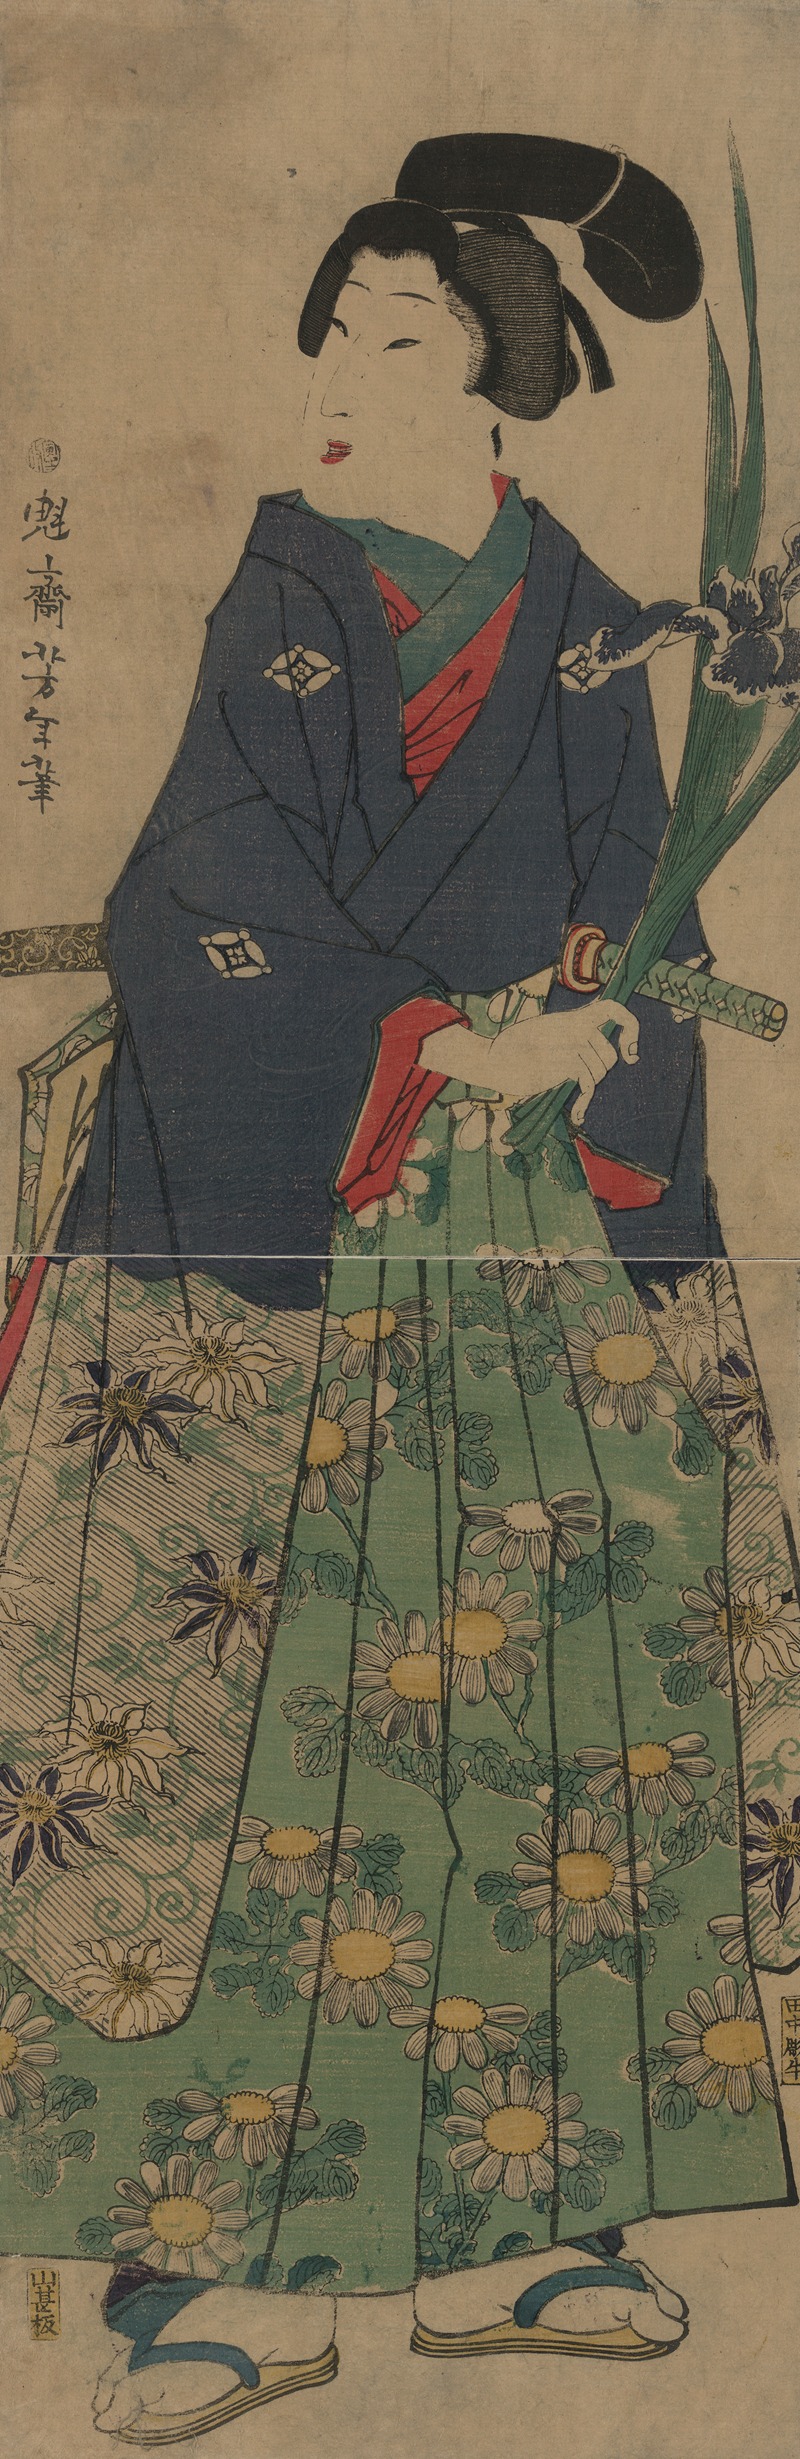 Tsukioka Yoshitoshi - Kakitsubata o matsu wakashū